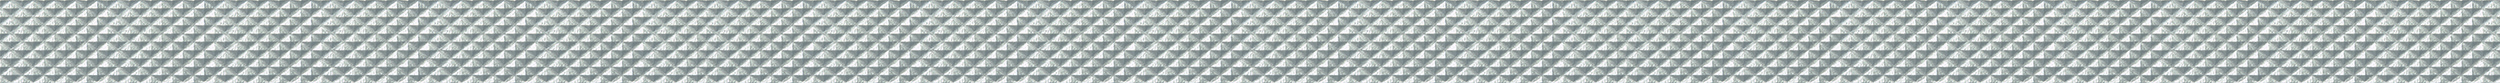 Бордюр Dynamic metal серебро 01 90x3